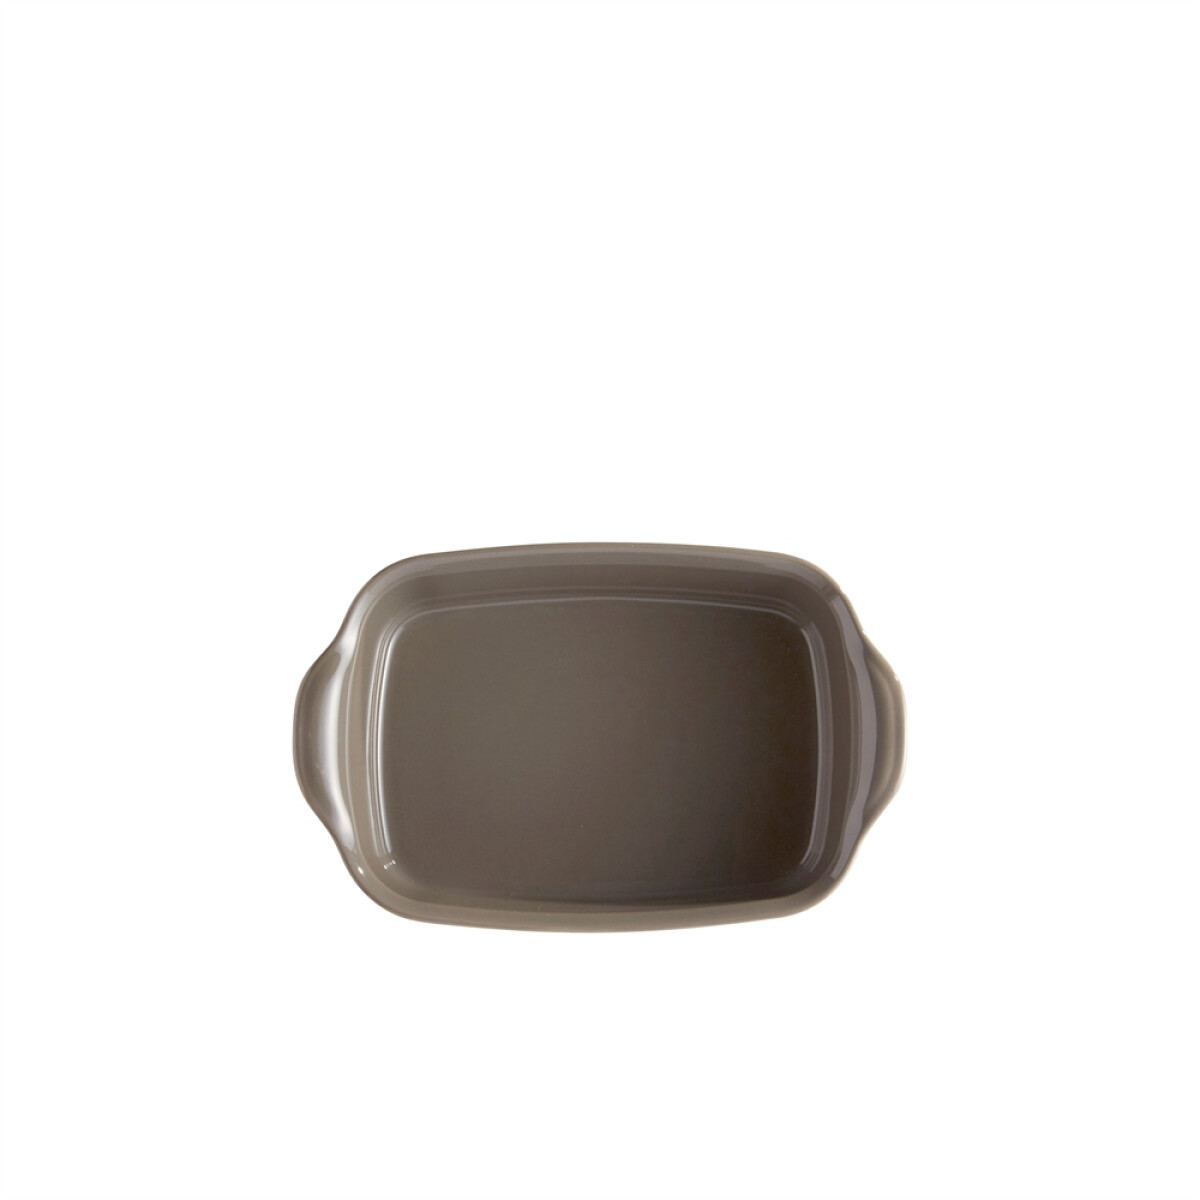 Керамична тава EMILE HENRY INDIVIDUAL OVEN DISH - 22х15 см, цвят сиво-бежов